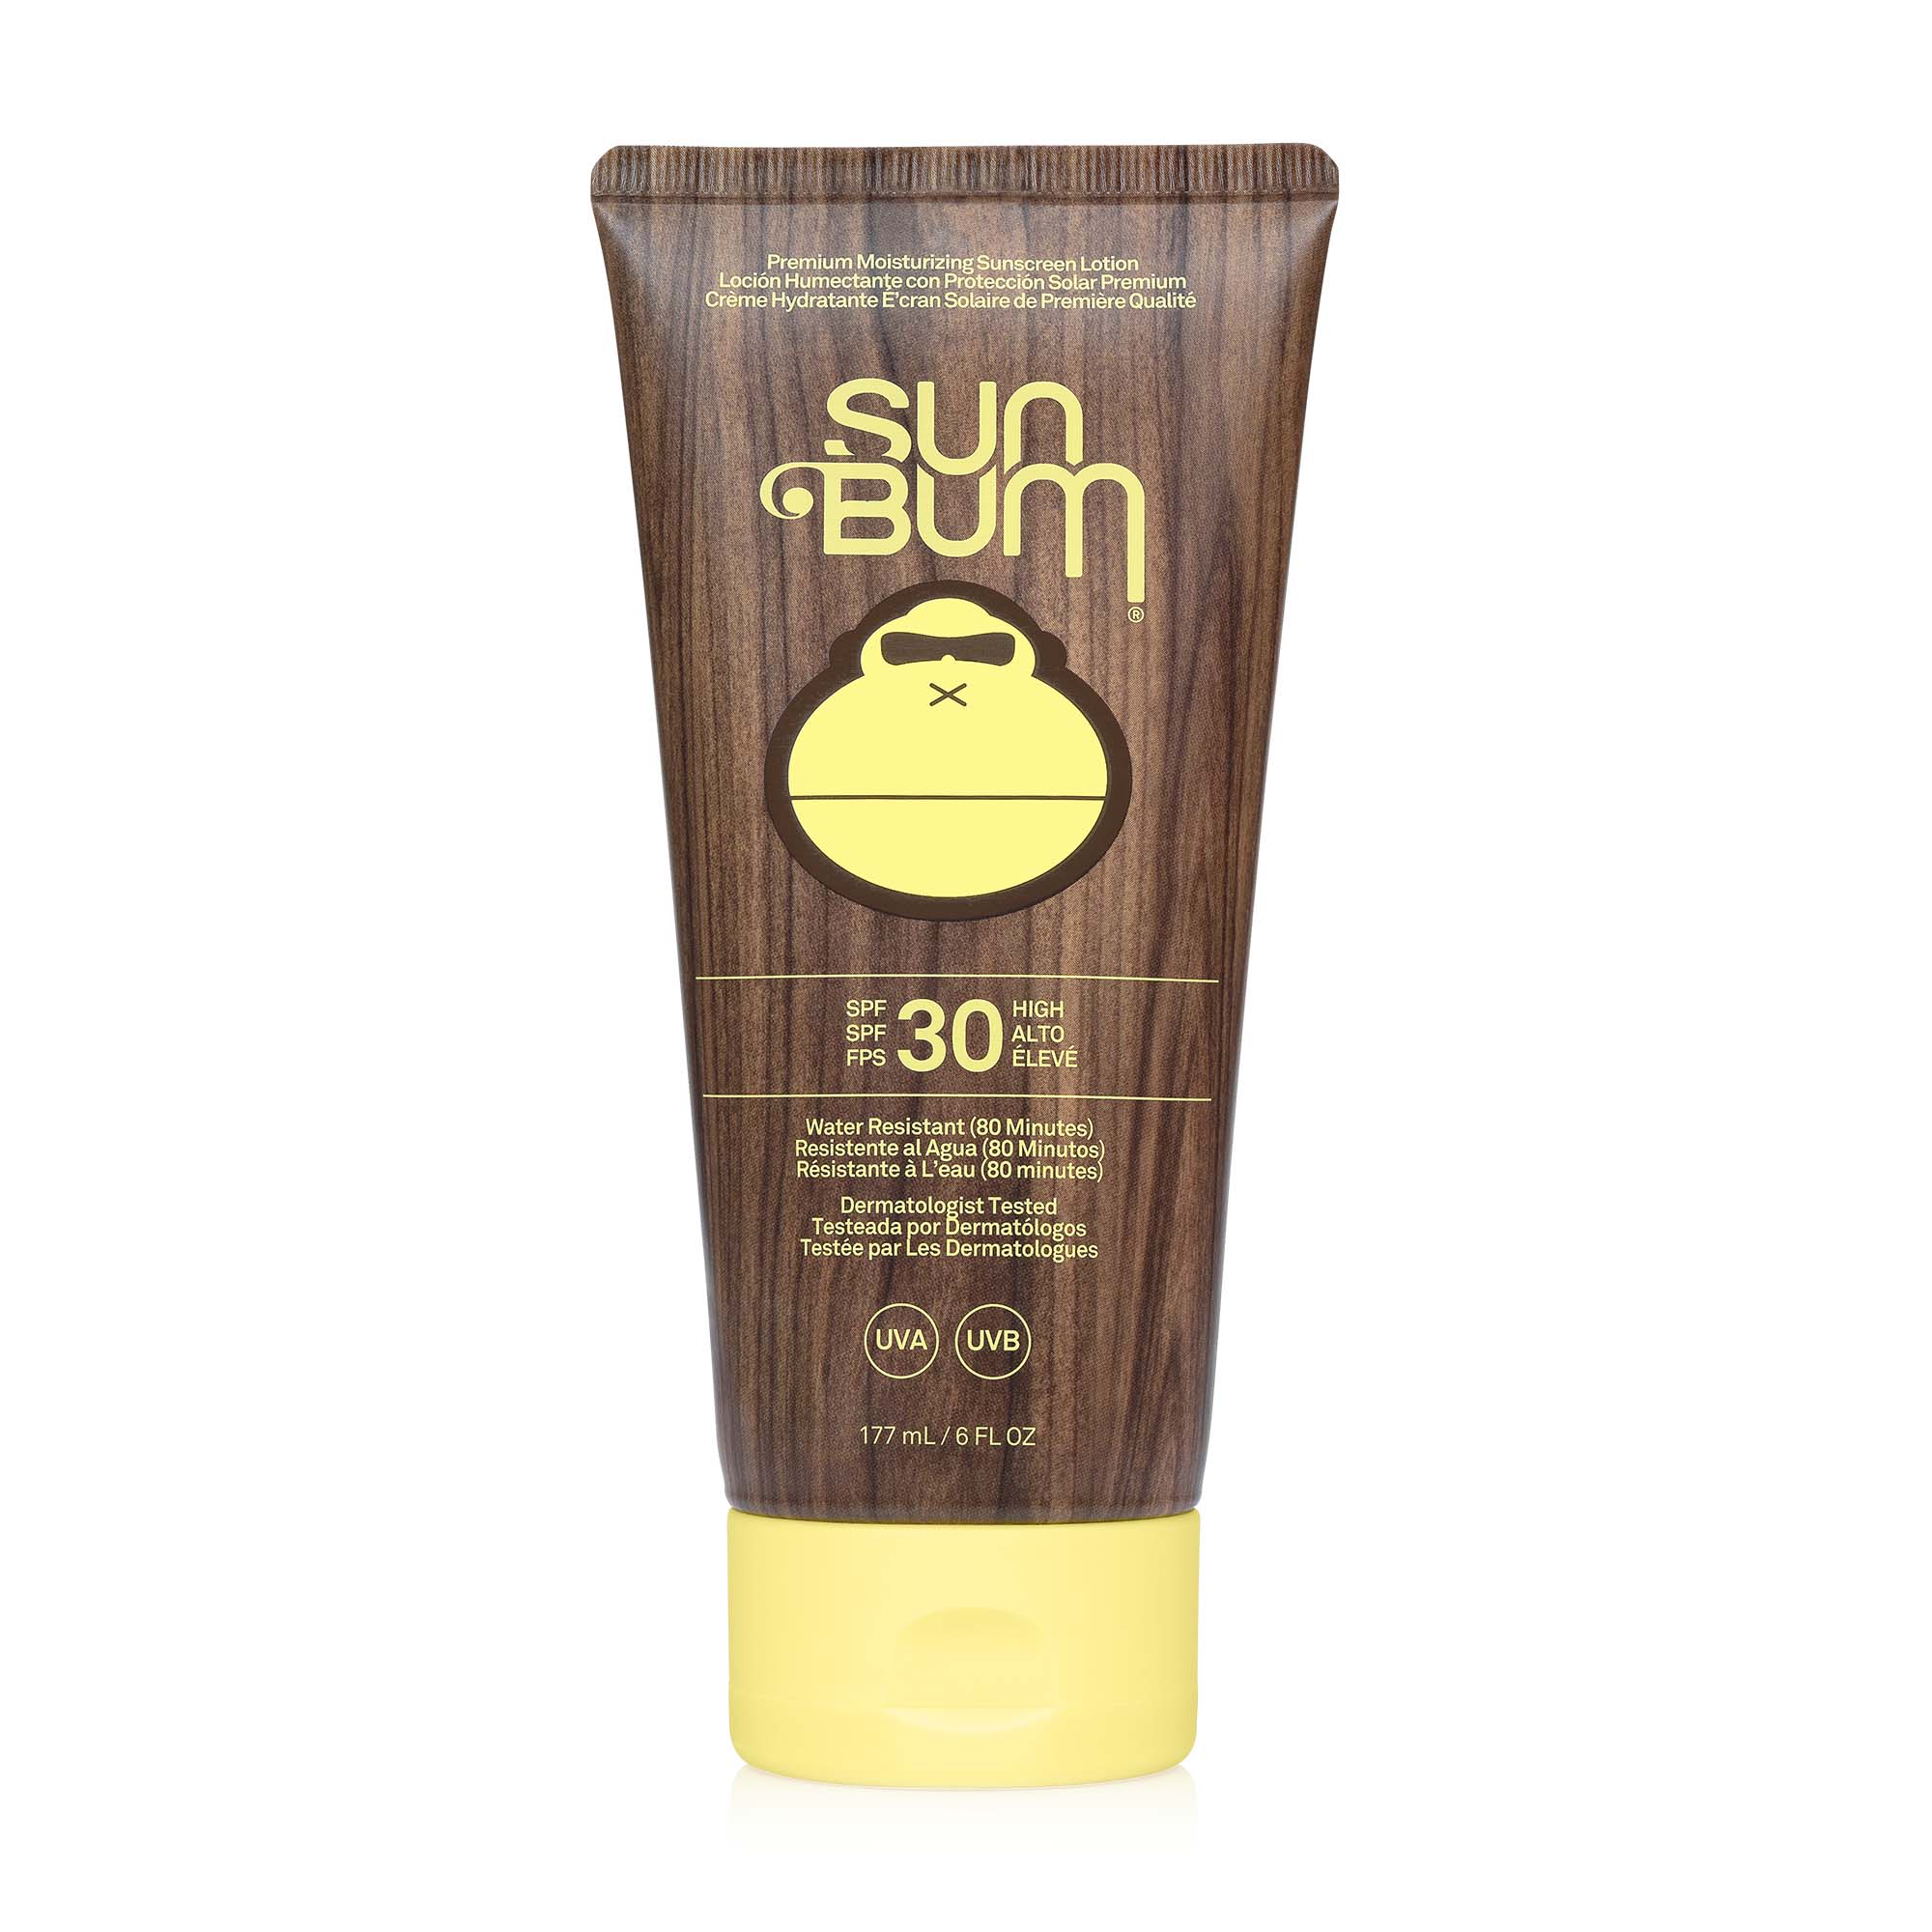 SUNBUM SUN BUM Original SPF 30 Sunscreen Lotion